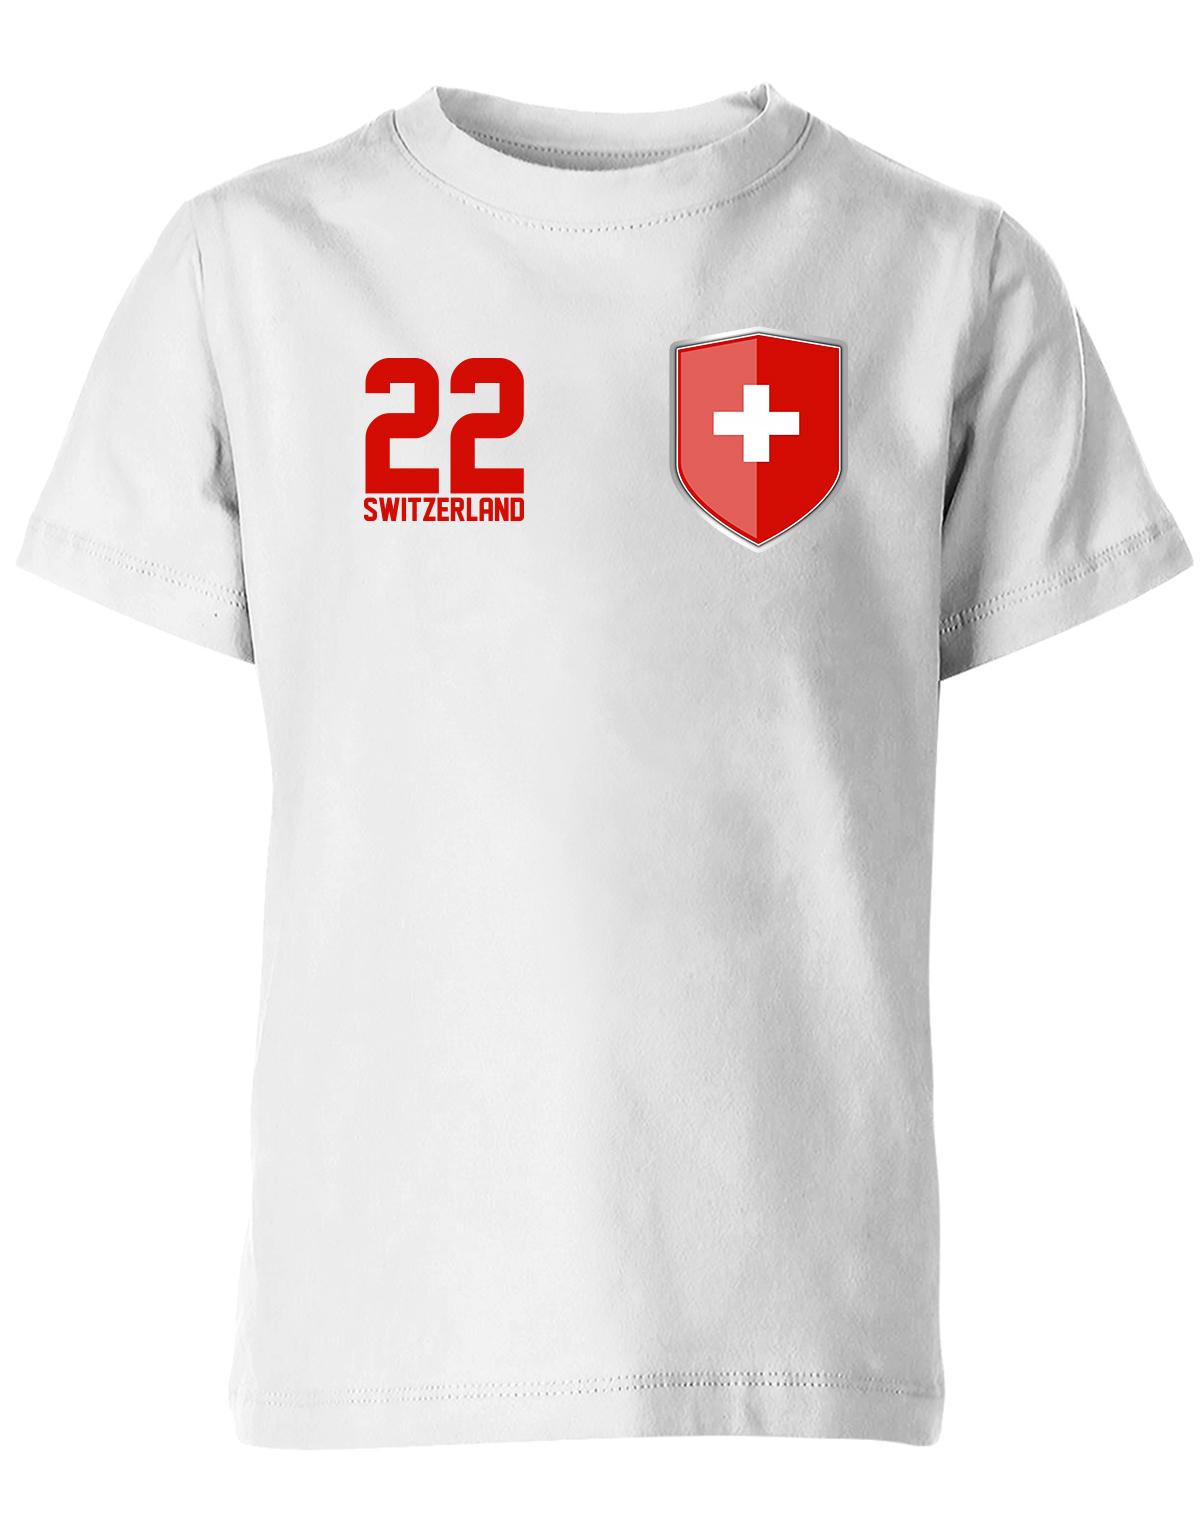 Switzerland-22-Wappen-Kinder-Weiss